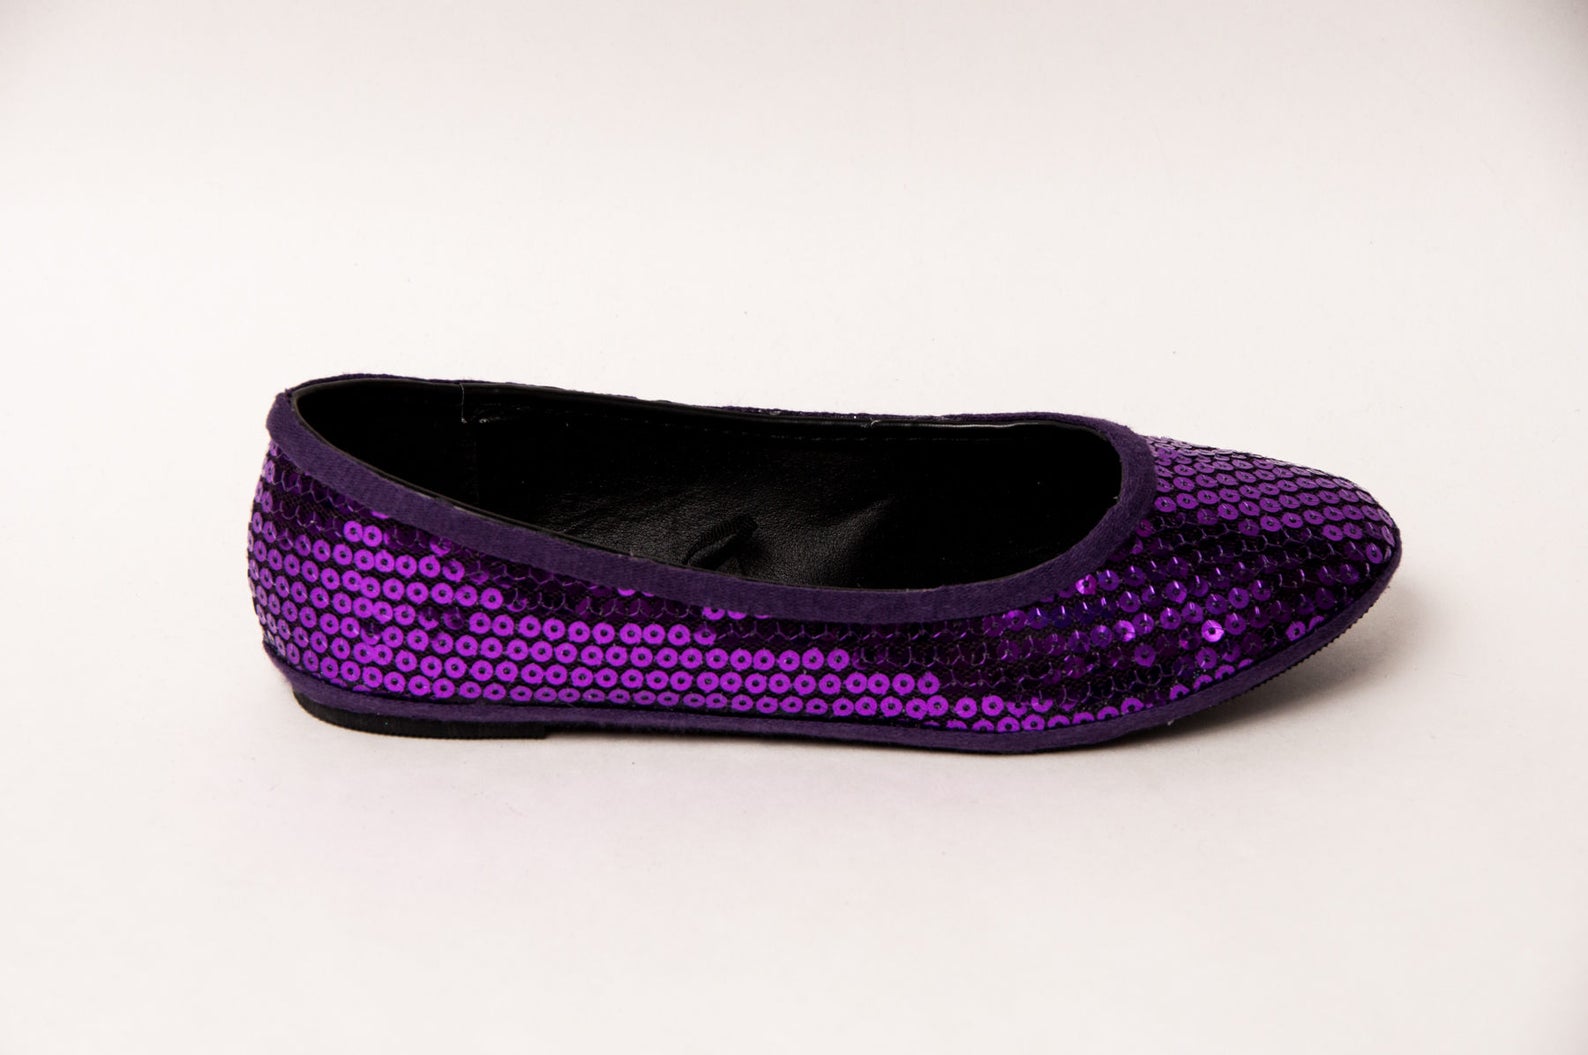 sequin - plum purple slipper ballet flats shoes by princess pumps